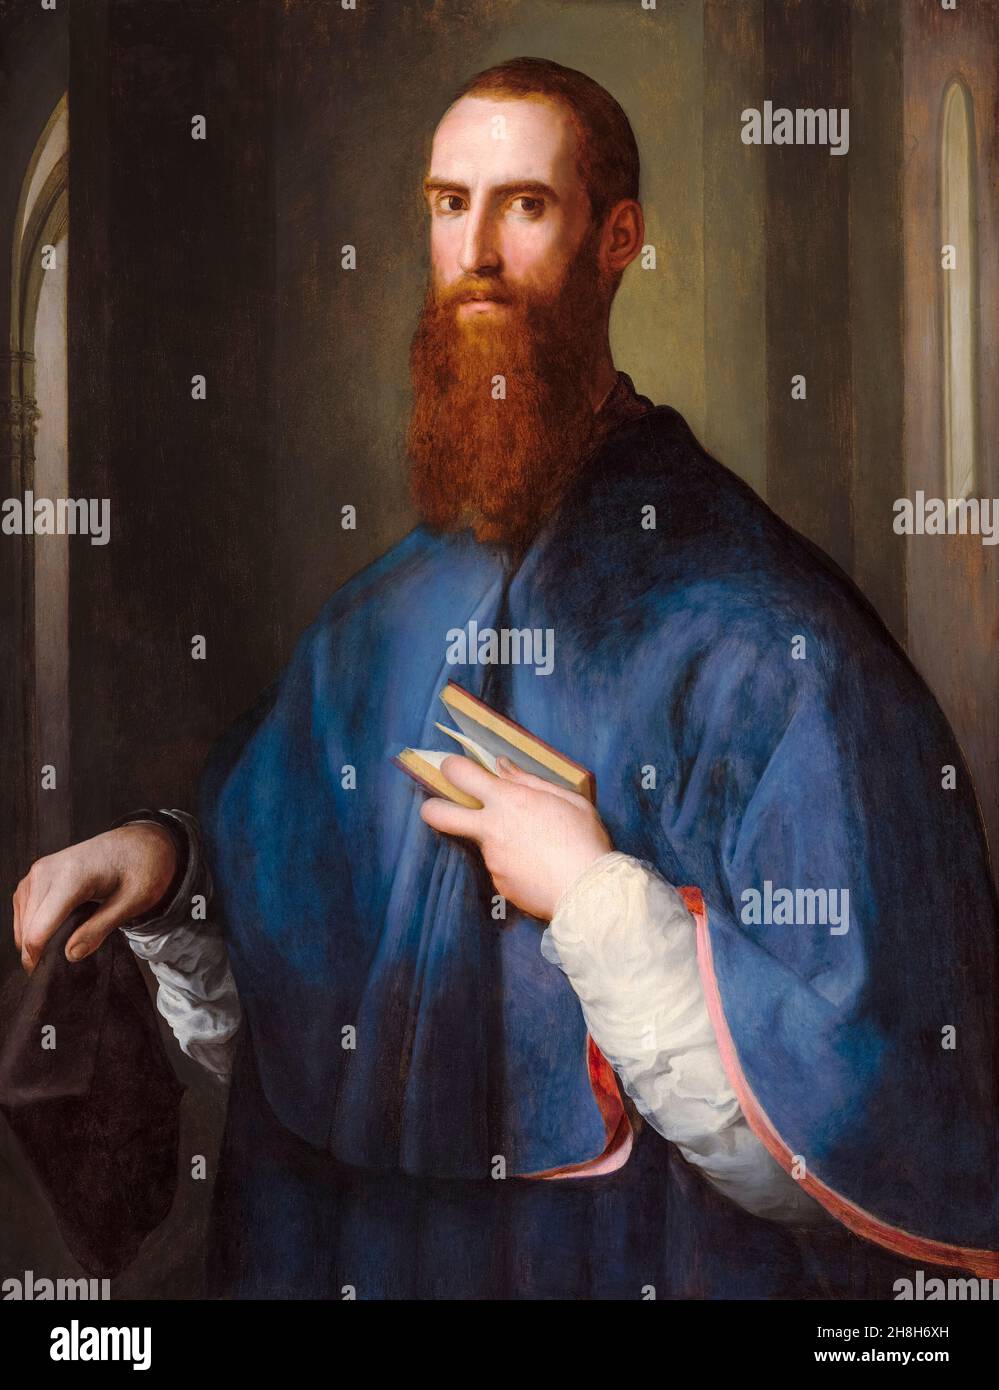 Monsignor della Casa, portrait painting by Jacopo da Pontormo, 1541-1544 Stock Photo